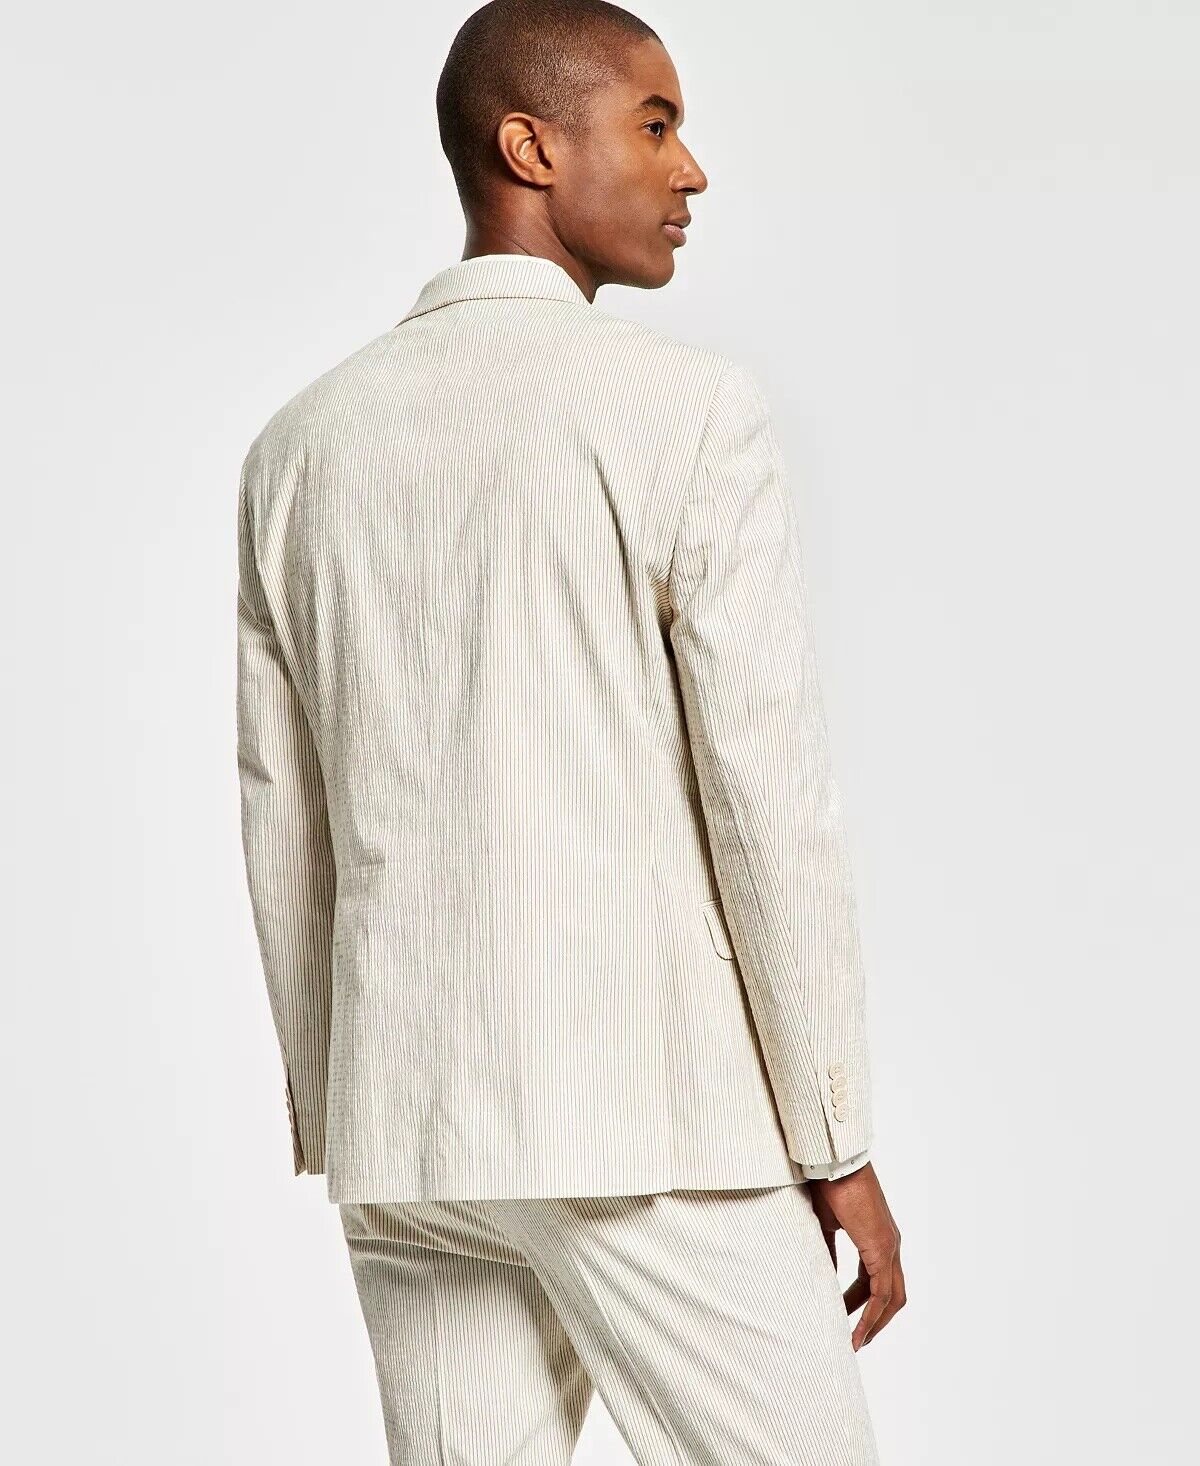 ALFANI Men's Slim-Fit Seersucker Stripe Suit Jacket Tan Cream 36R Sport Coat